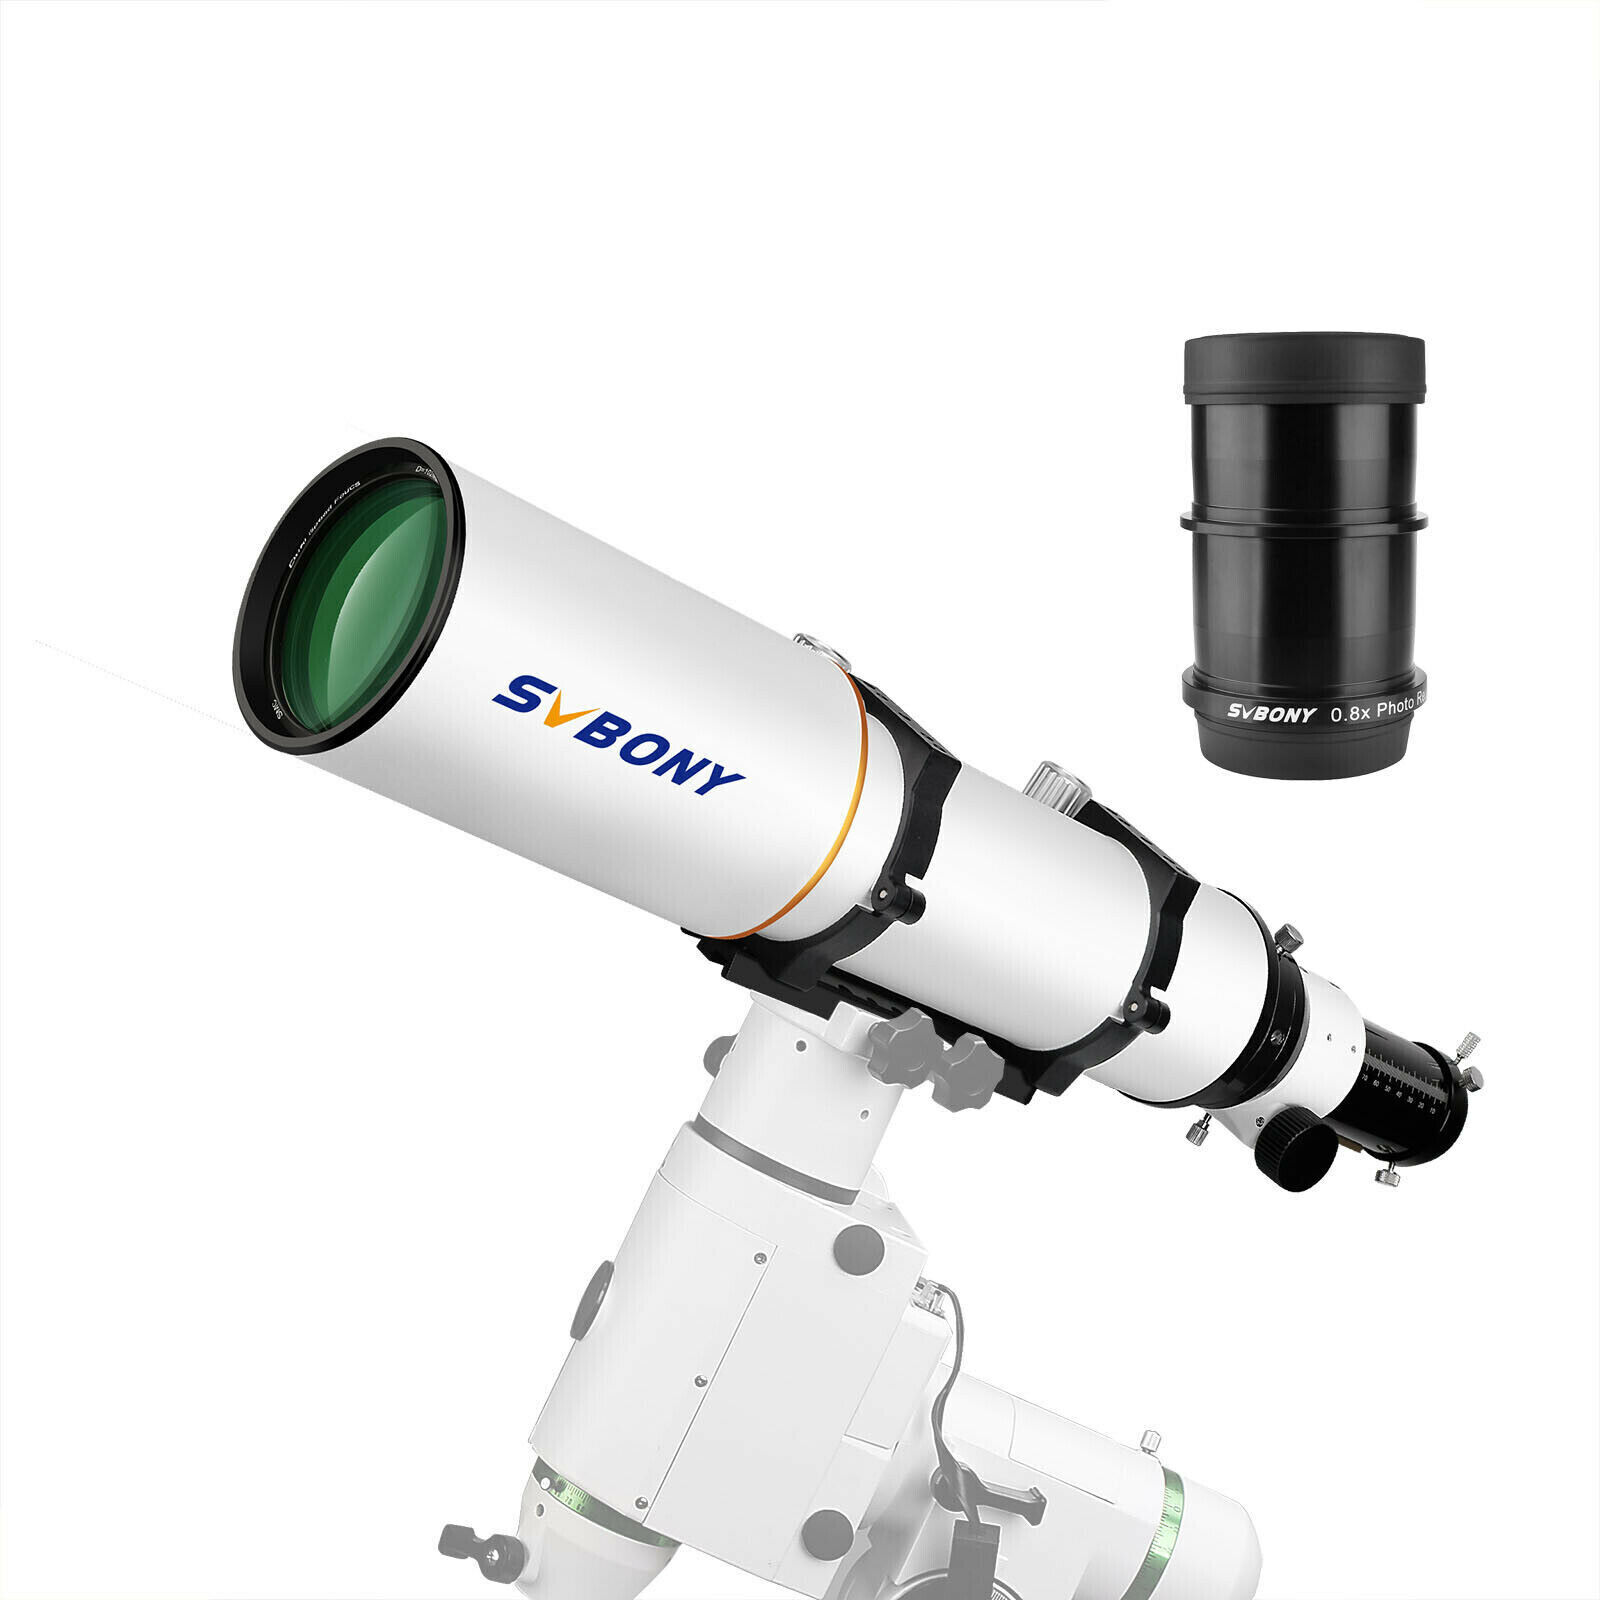 SVBONY SV503 102ED F7 Telescopes Refractor W/ SV193 2-Inch 0.8x Focal Reducer